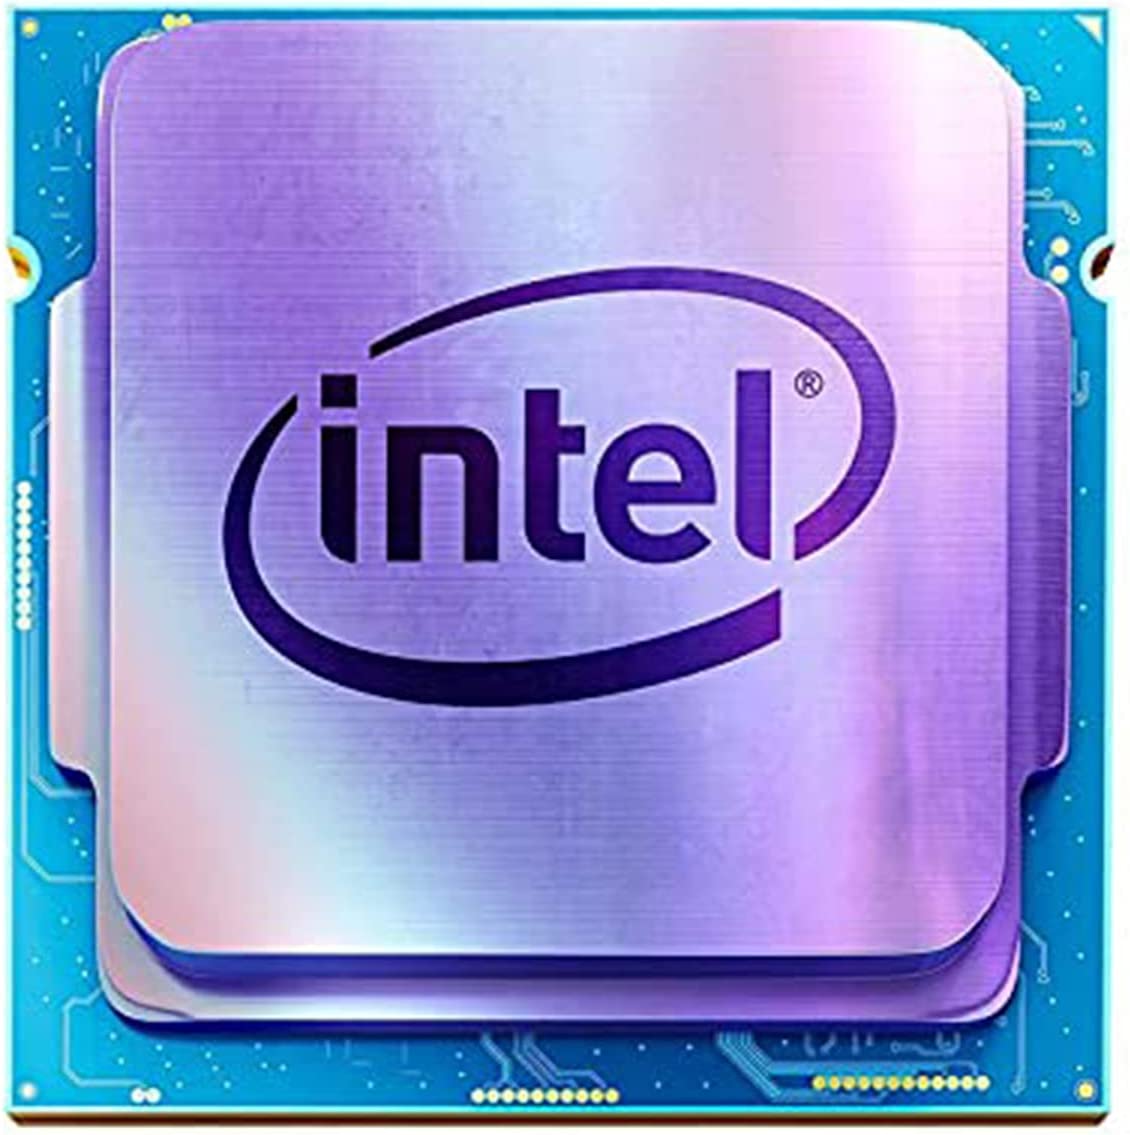 Intel CPU BX8070110100F Core i3-10100F / 3.6GHz / 6MB LGA1200 4C / 8T